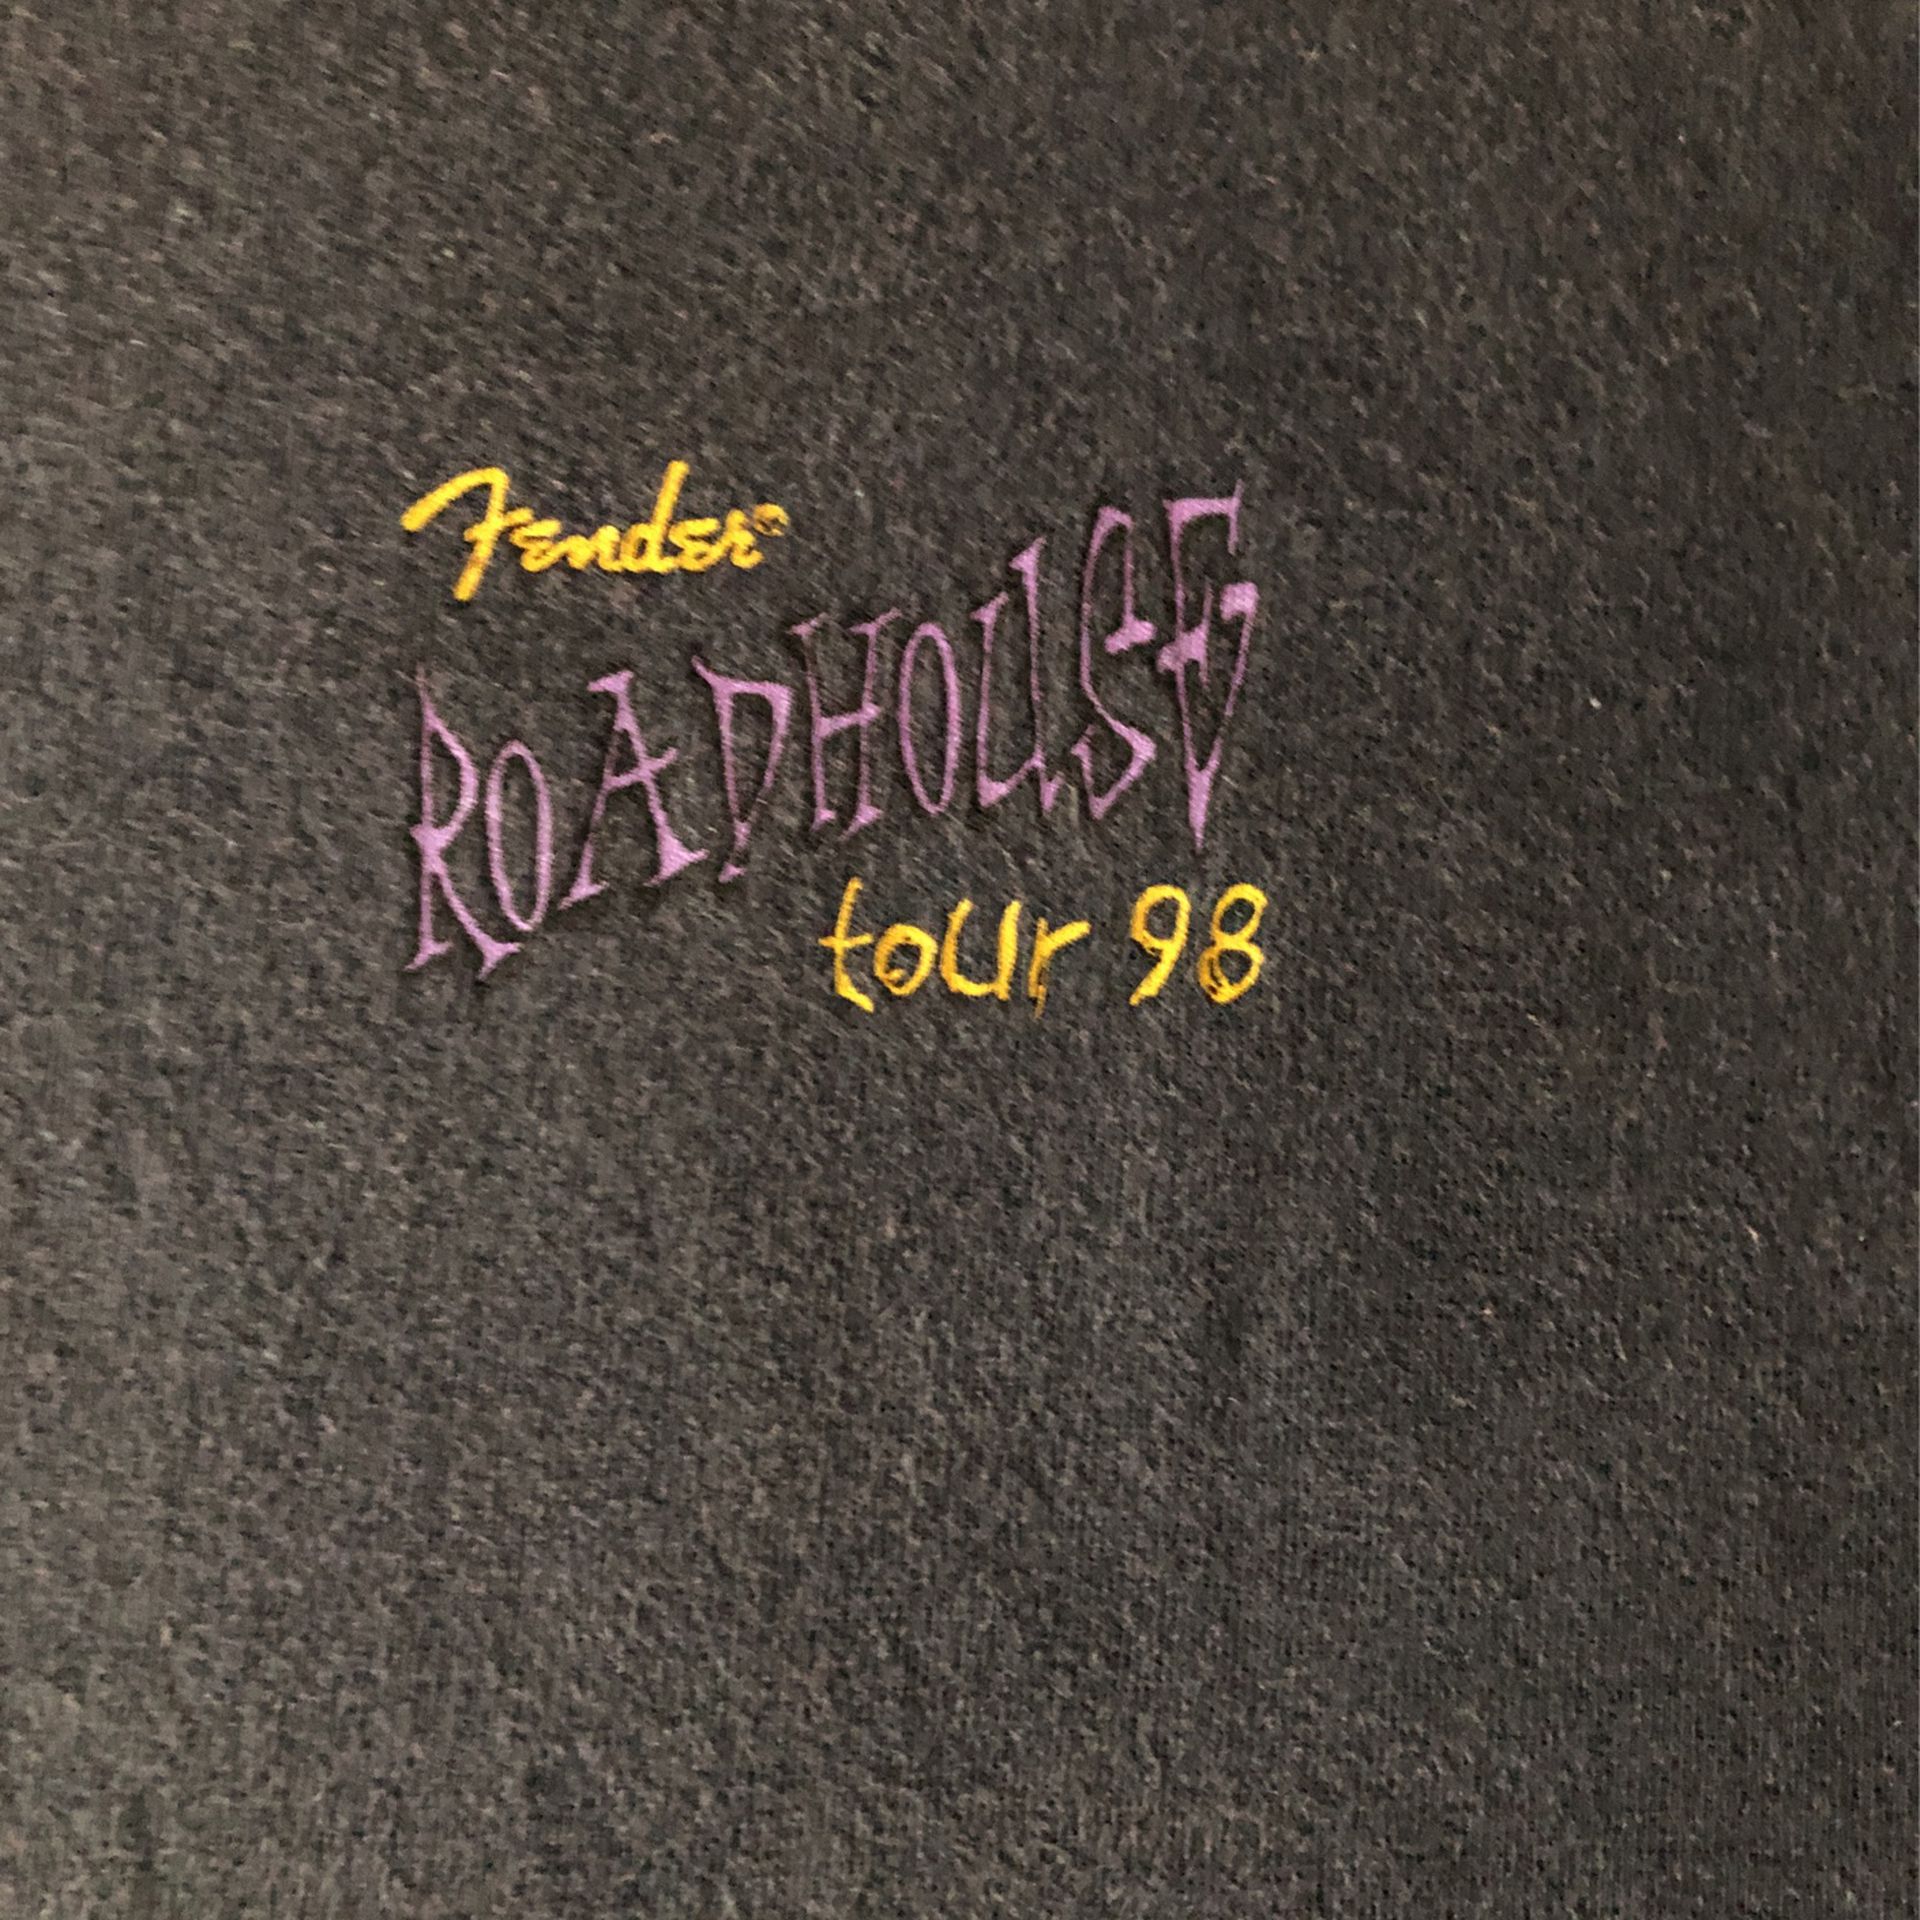 1998 Fender Roadhouse Tour , Men’s XL Tee Made USA